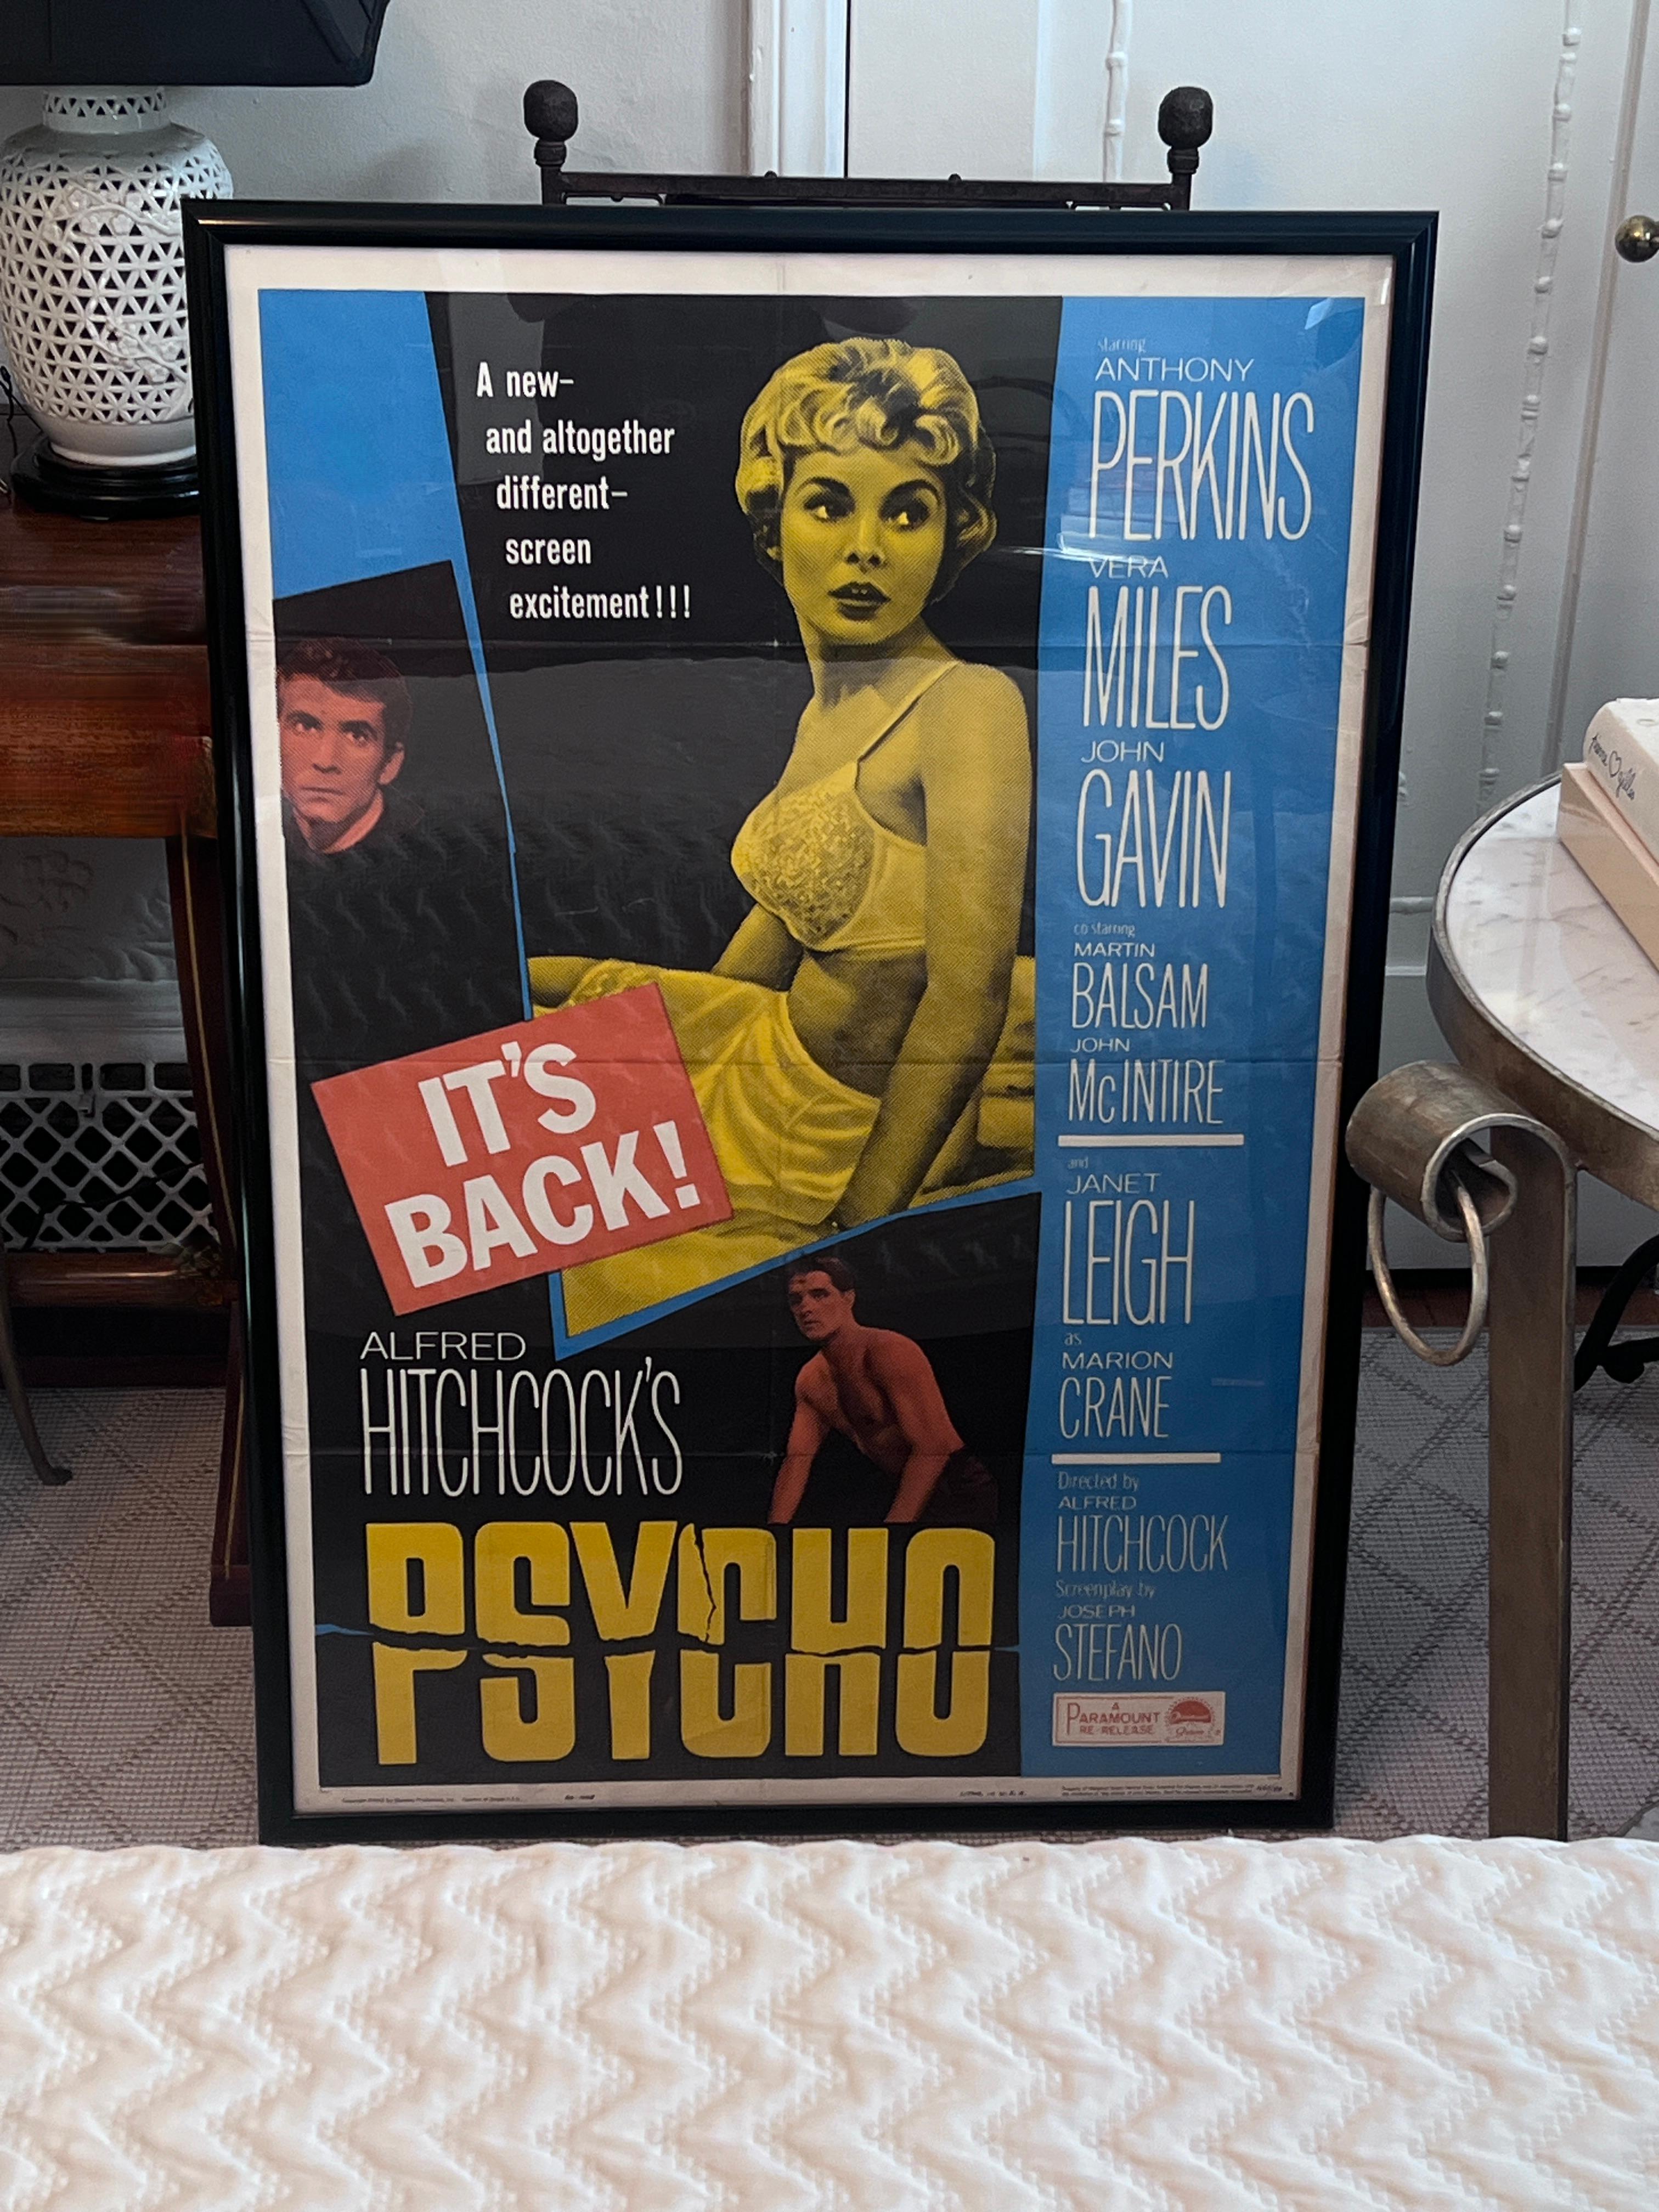 Affiche de cinéma encadrée pour la réédition du film PSYCHO d'Alfred Hitchcock, avec Janet Leigh, Anthony Perkins et Vera.

L'affiche a été pliée, à un moment donné, et certains plis sont visibles (nous pensons que cela ajoute au caractère et à